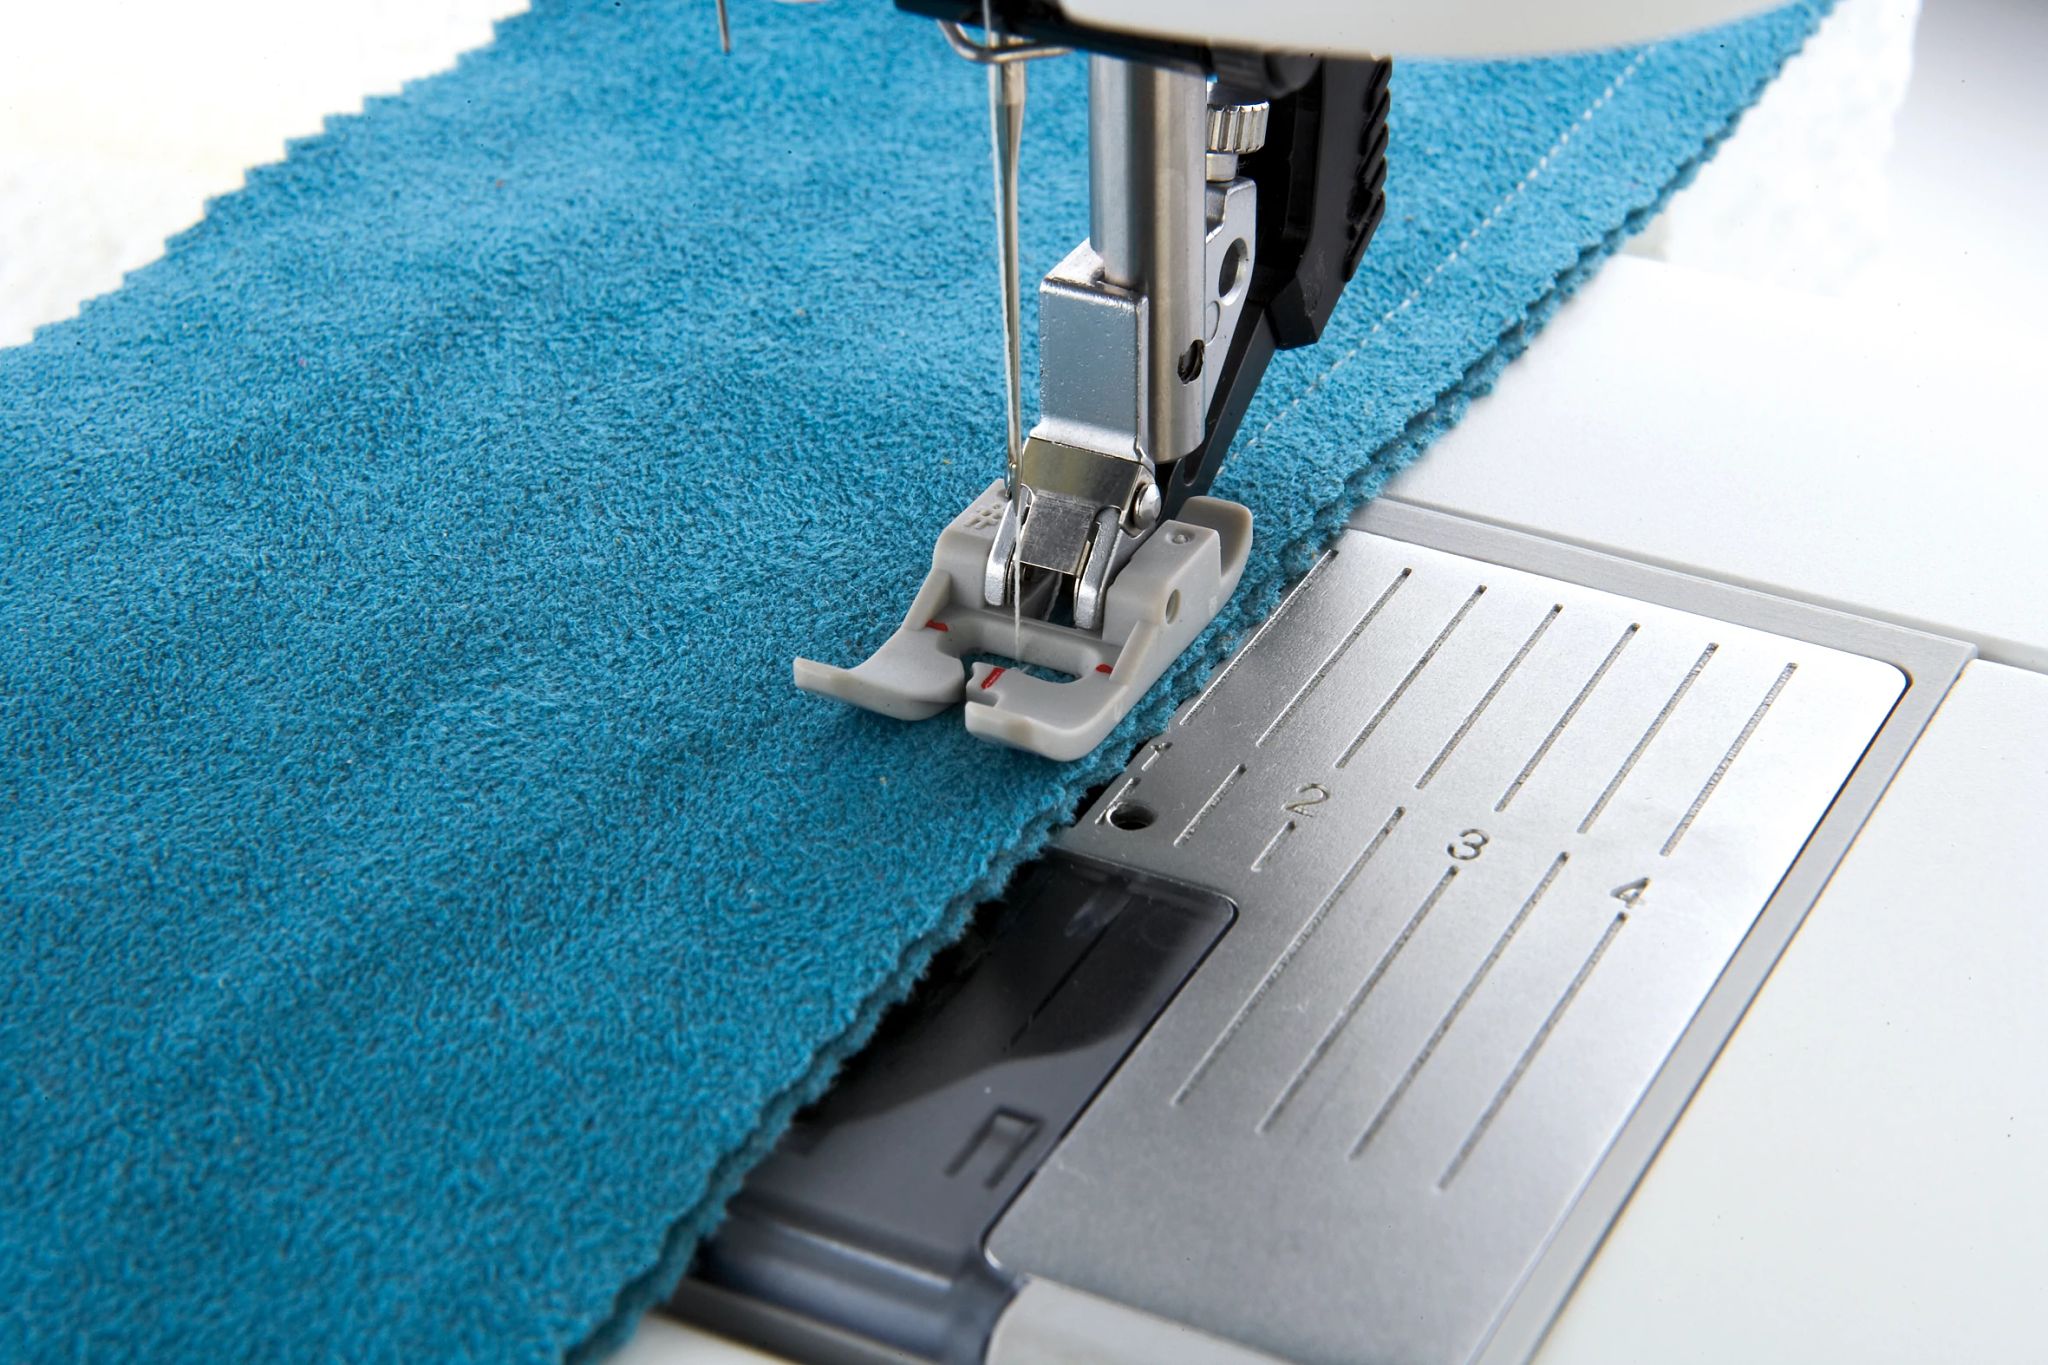  YEQIN FEET KIT for Pfaff domestic sewing machine pfaff presser  foot pfaff foot